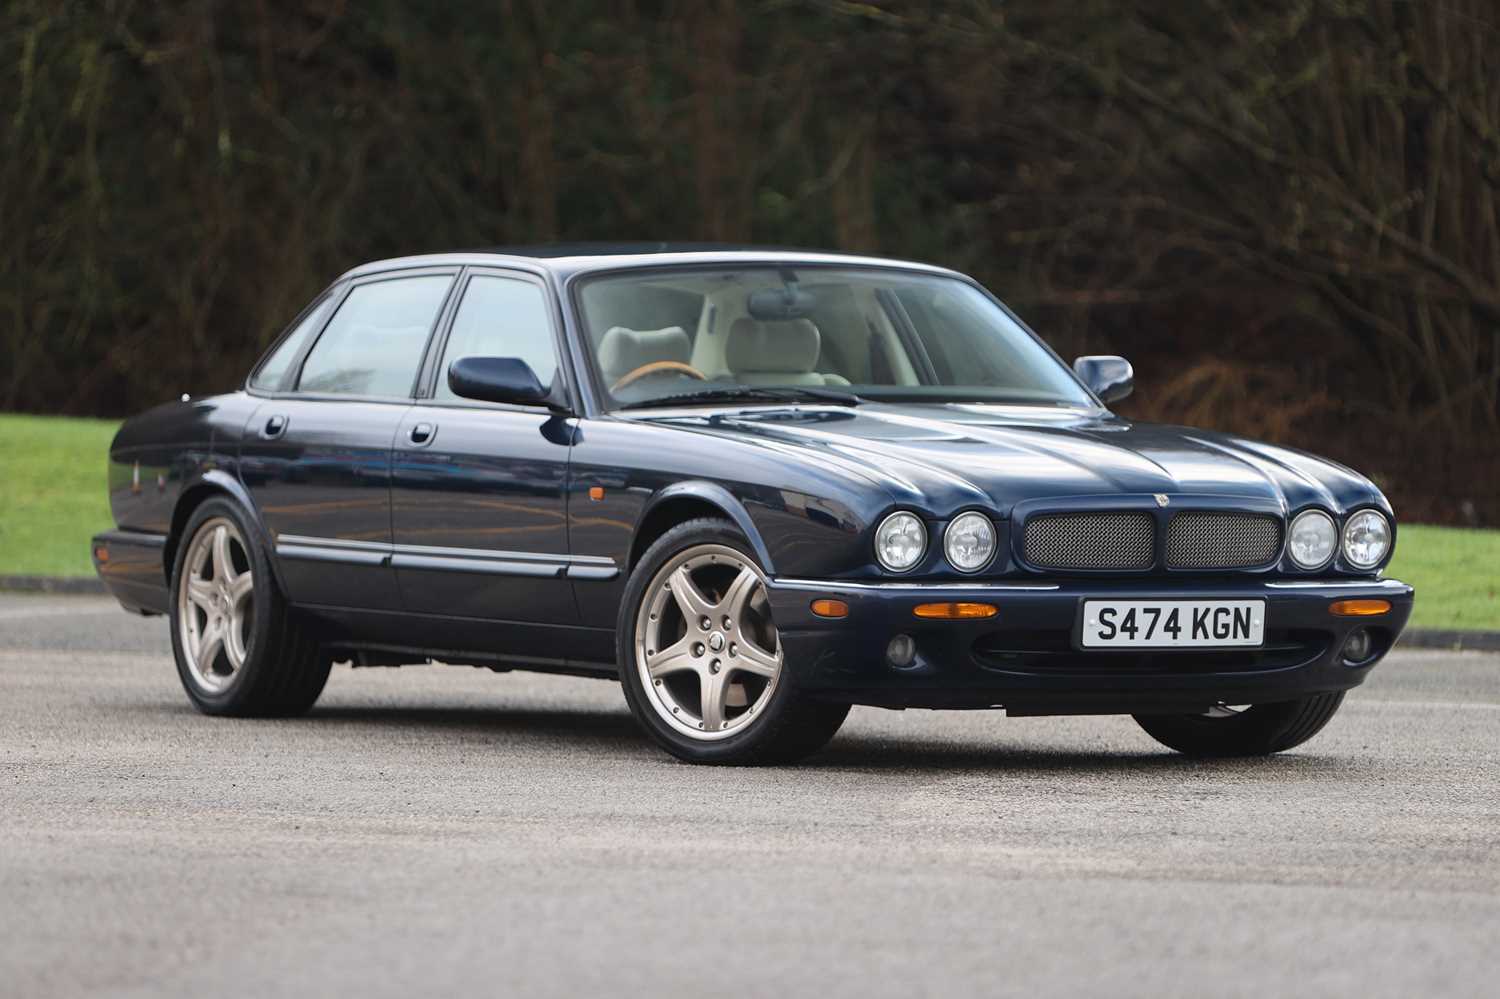 Lot 174 - 1998 Jaguar XJR 4.0